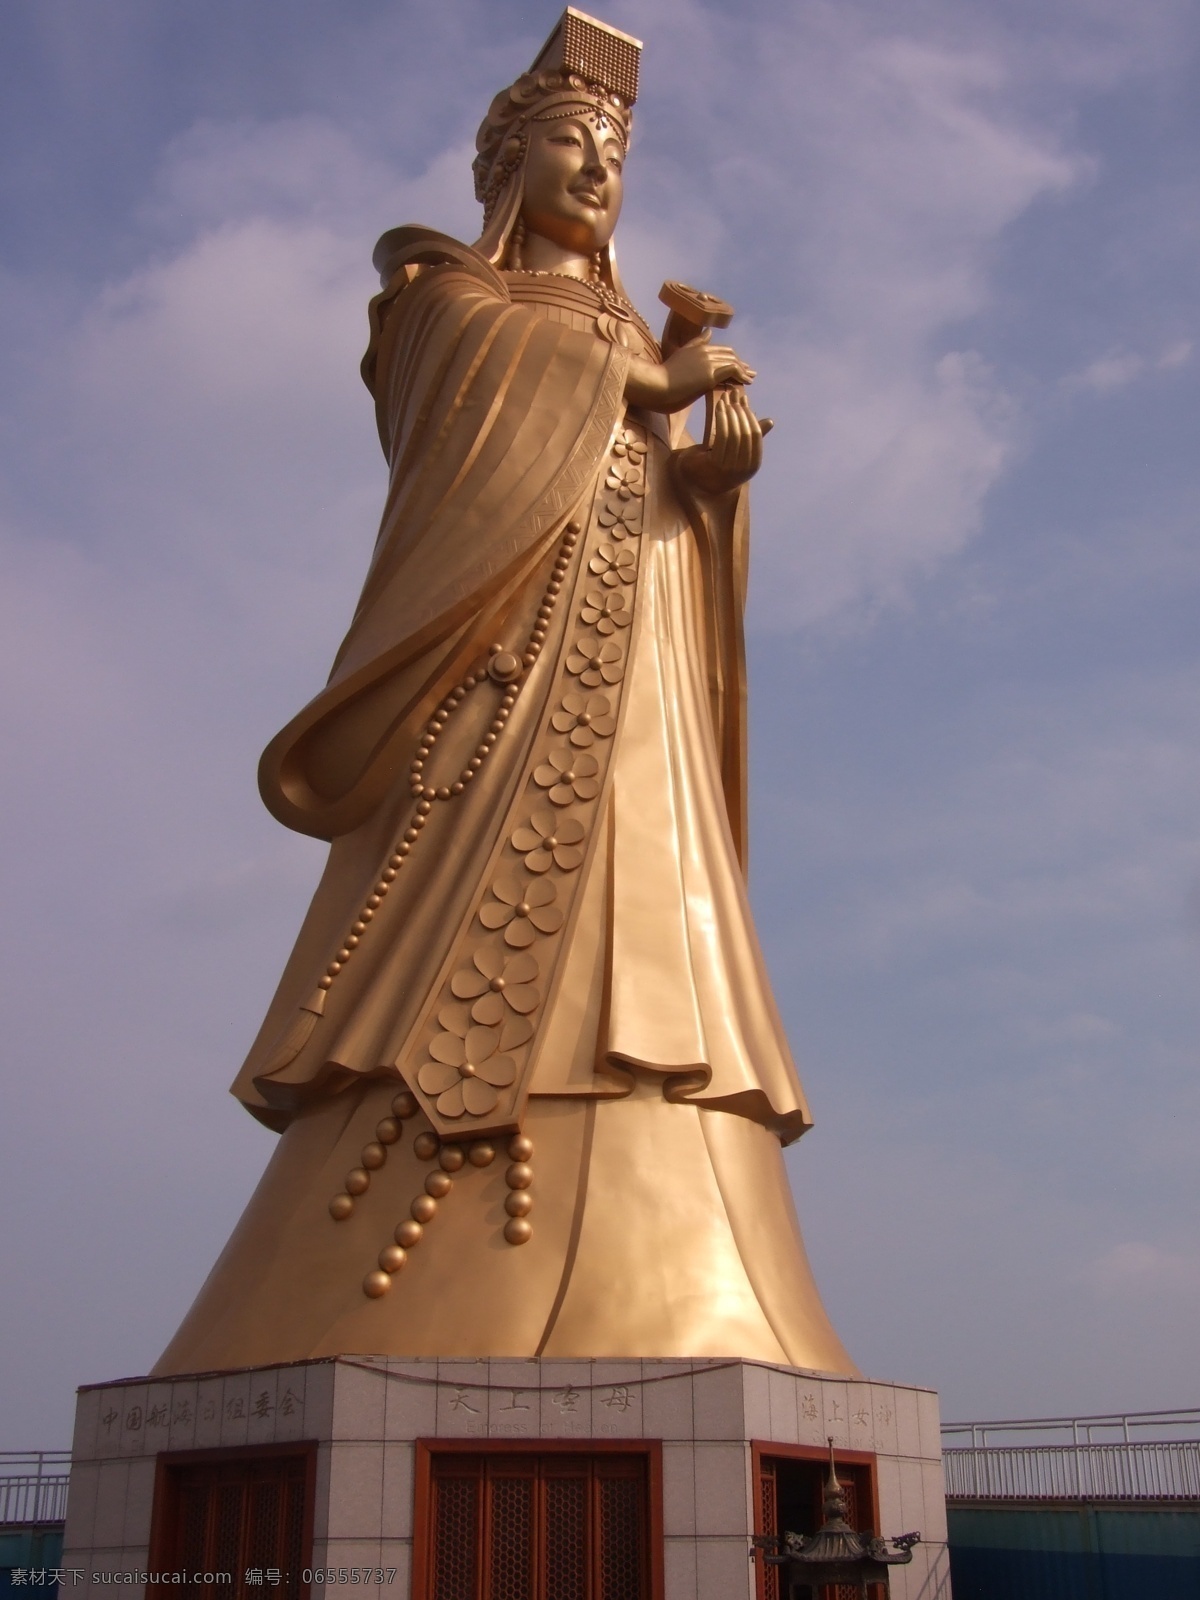 雕塑 建筑园林 妈祖 青岛 上 女神 雕像 海上 银海 游艇 俱乐部 金身 雕塑系列 风景 生活 旅游餐饮